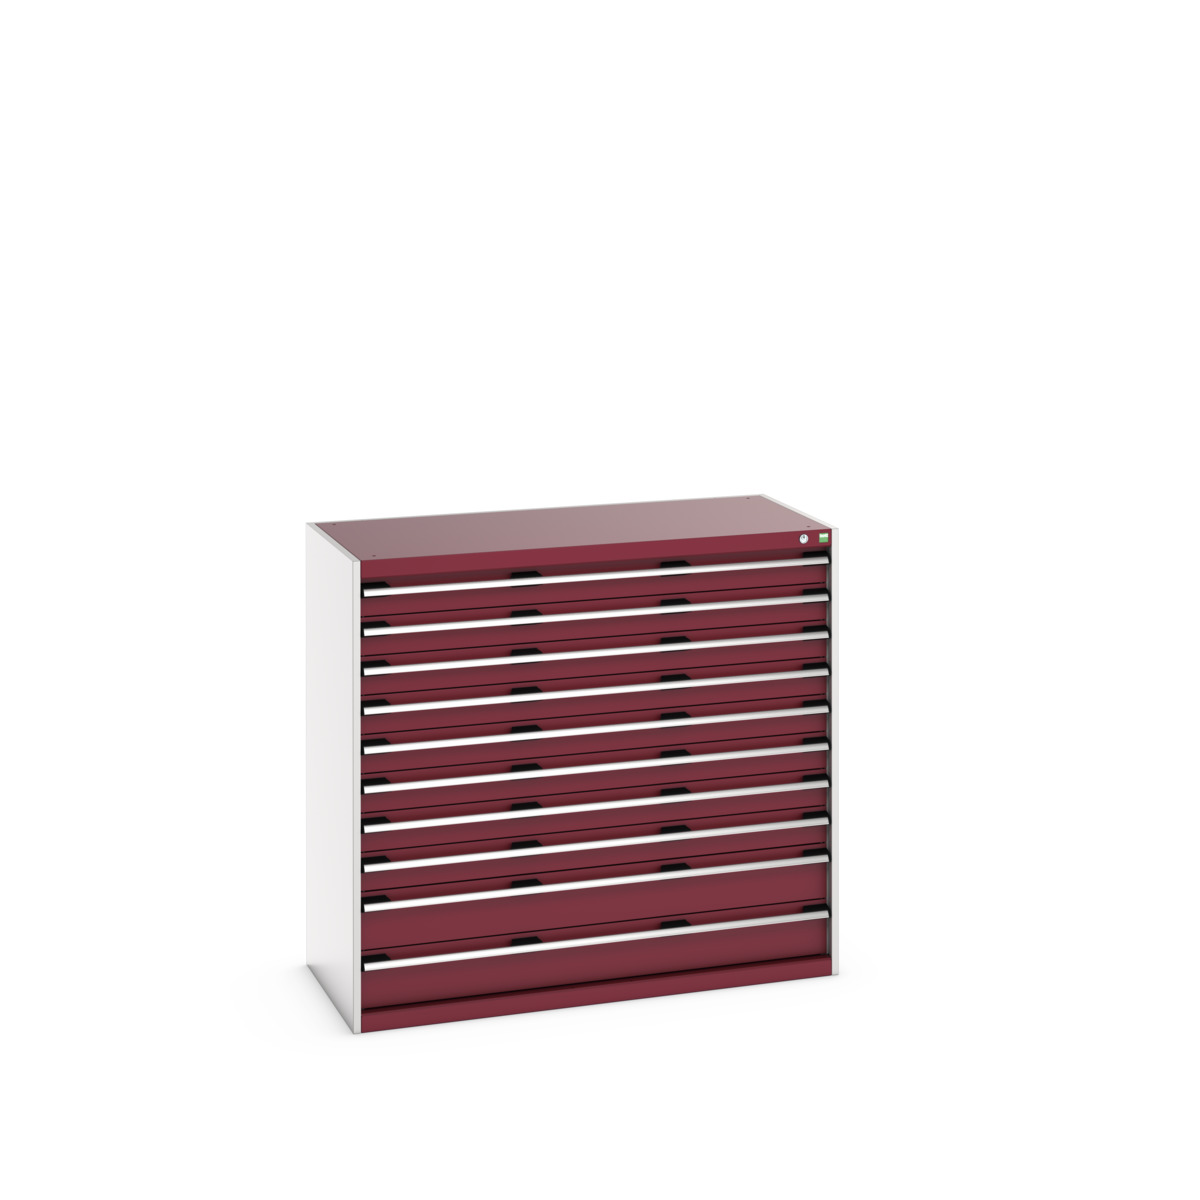 40022131.24V - cubio drawer cabinet